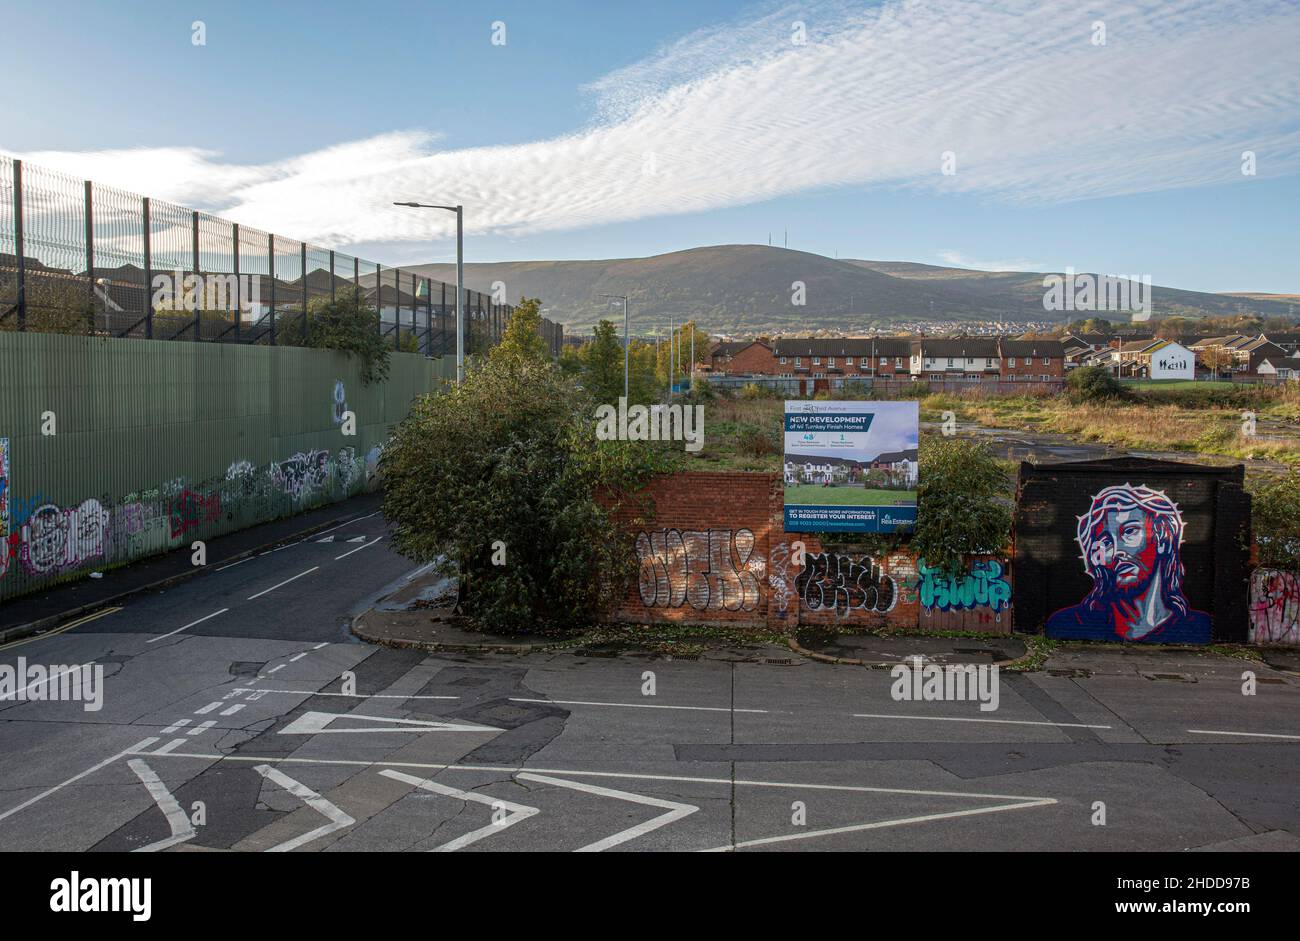 Peintures murales et graffiti colorées sur le mur de la paix, ou Peace Line, le long de Cupar Way à Belfast.C'est l'un des nombreux obstacles à la séparation dans l'Irel du nord Banque D'Images